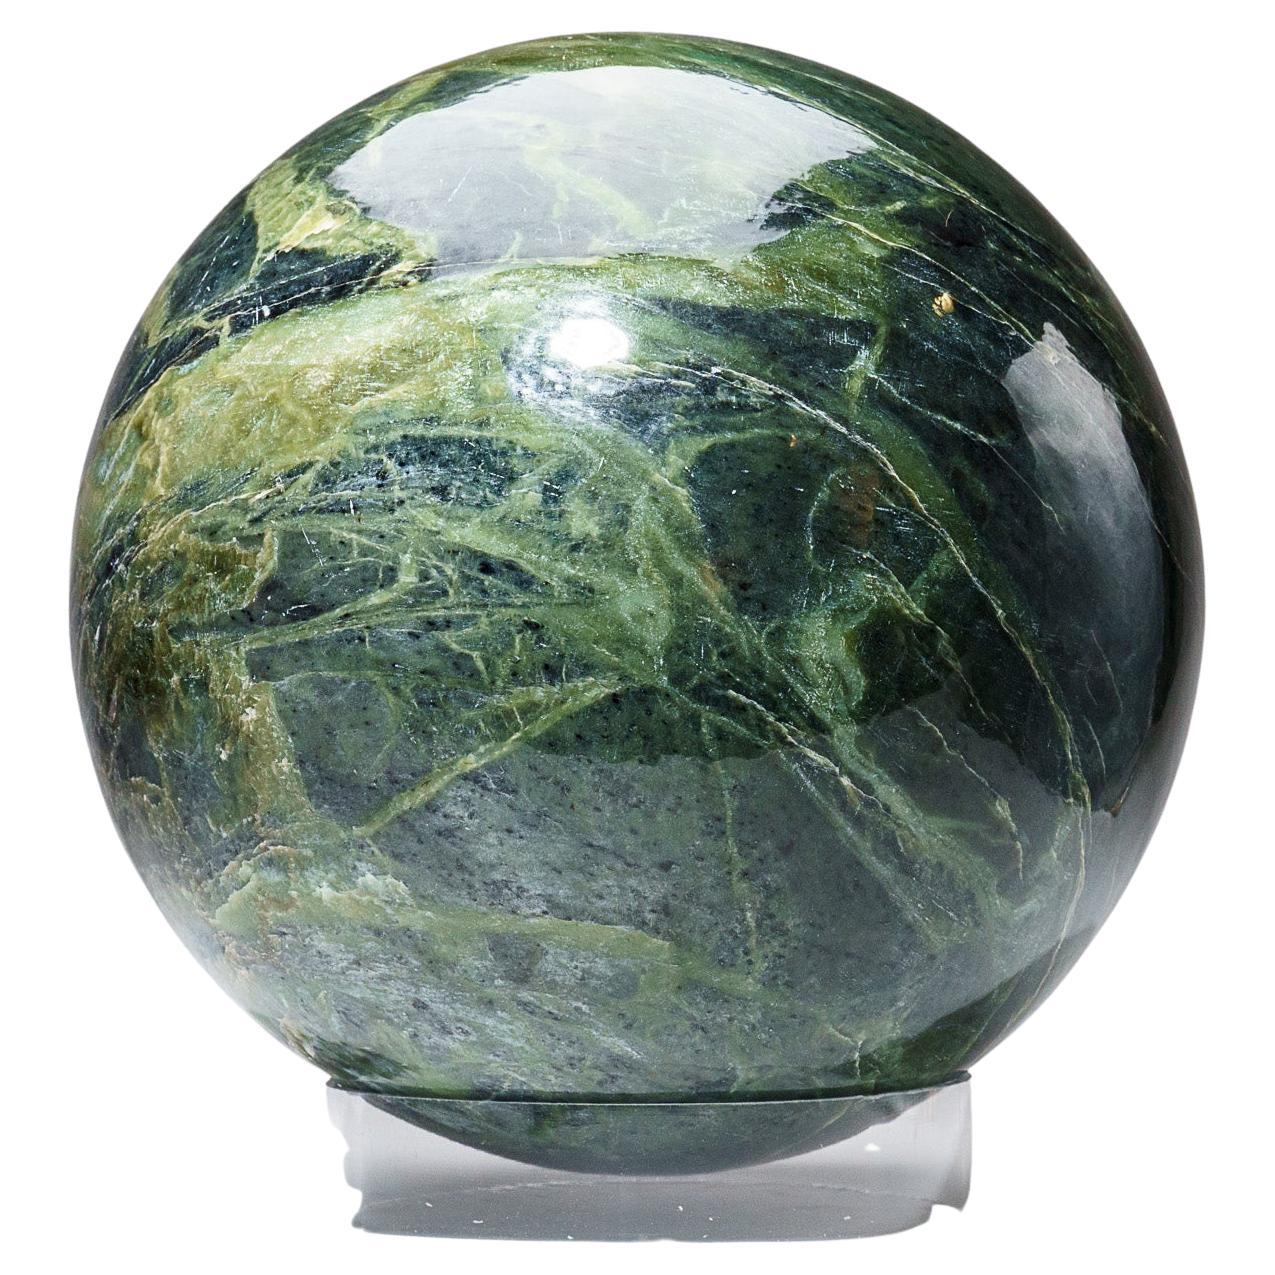 Énorme sphère de jade néphrite véritable polie du Pakistan, '65 Lbs'.